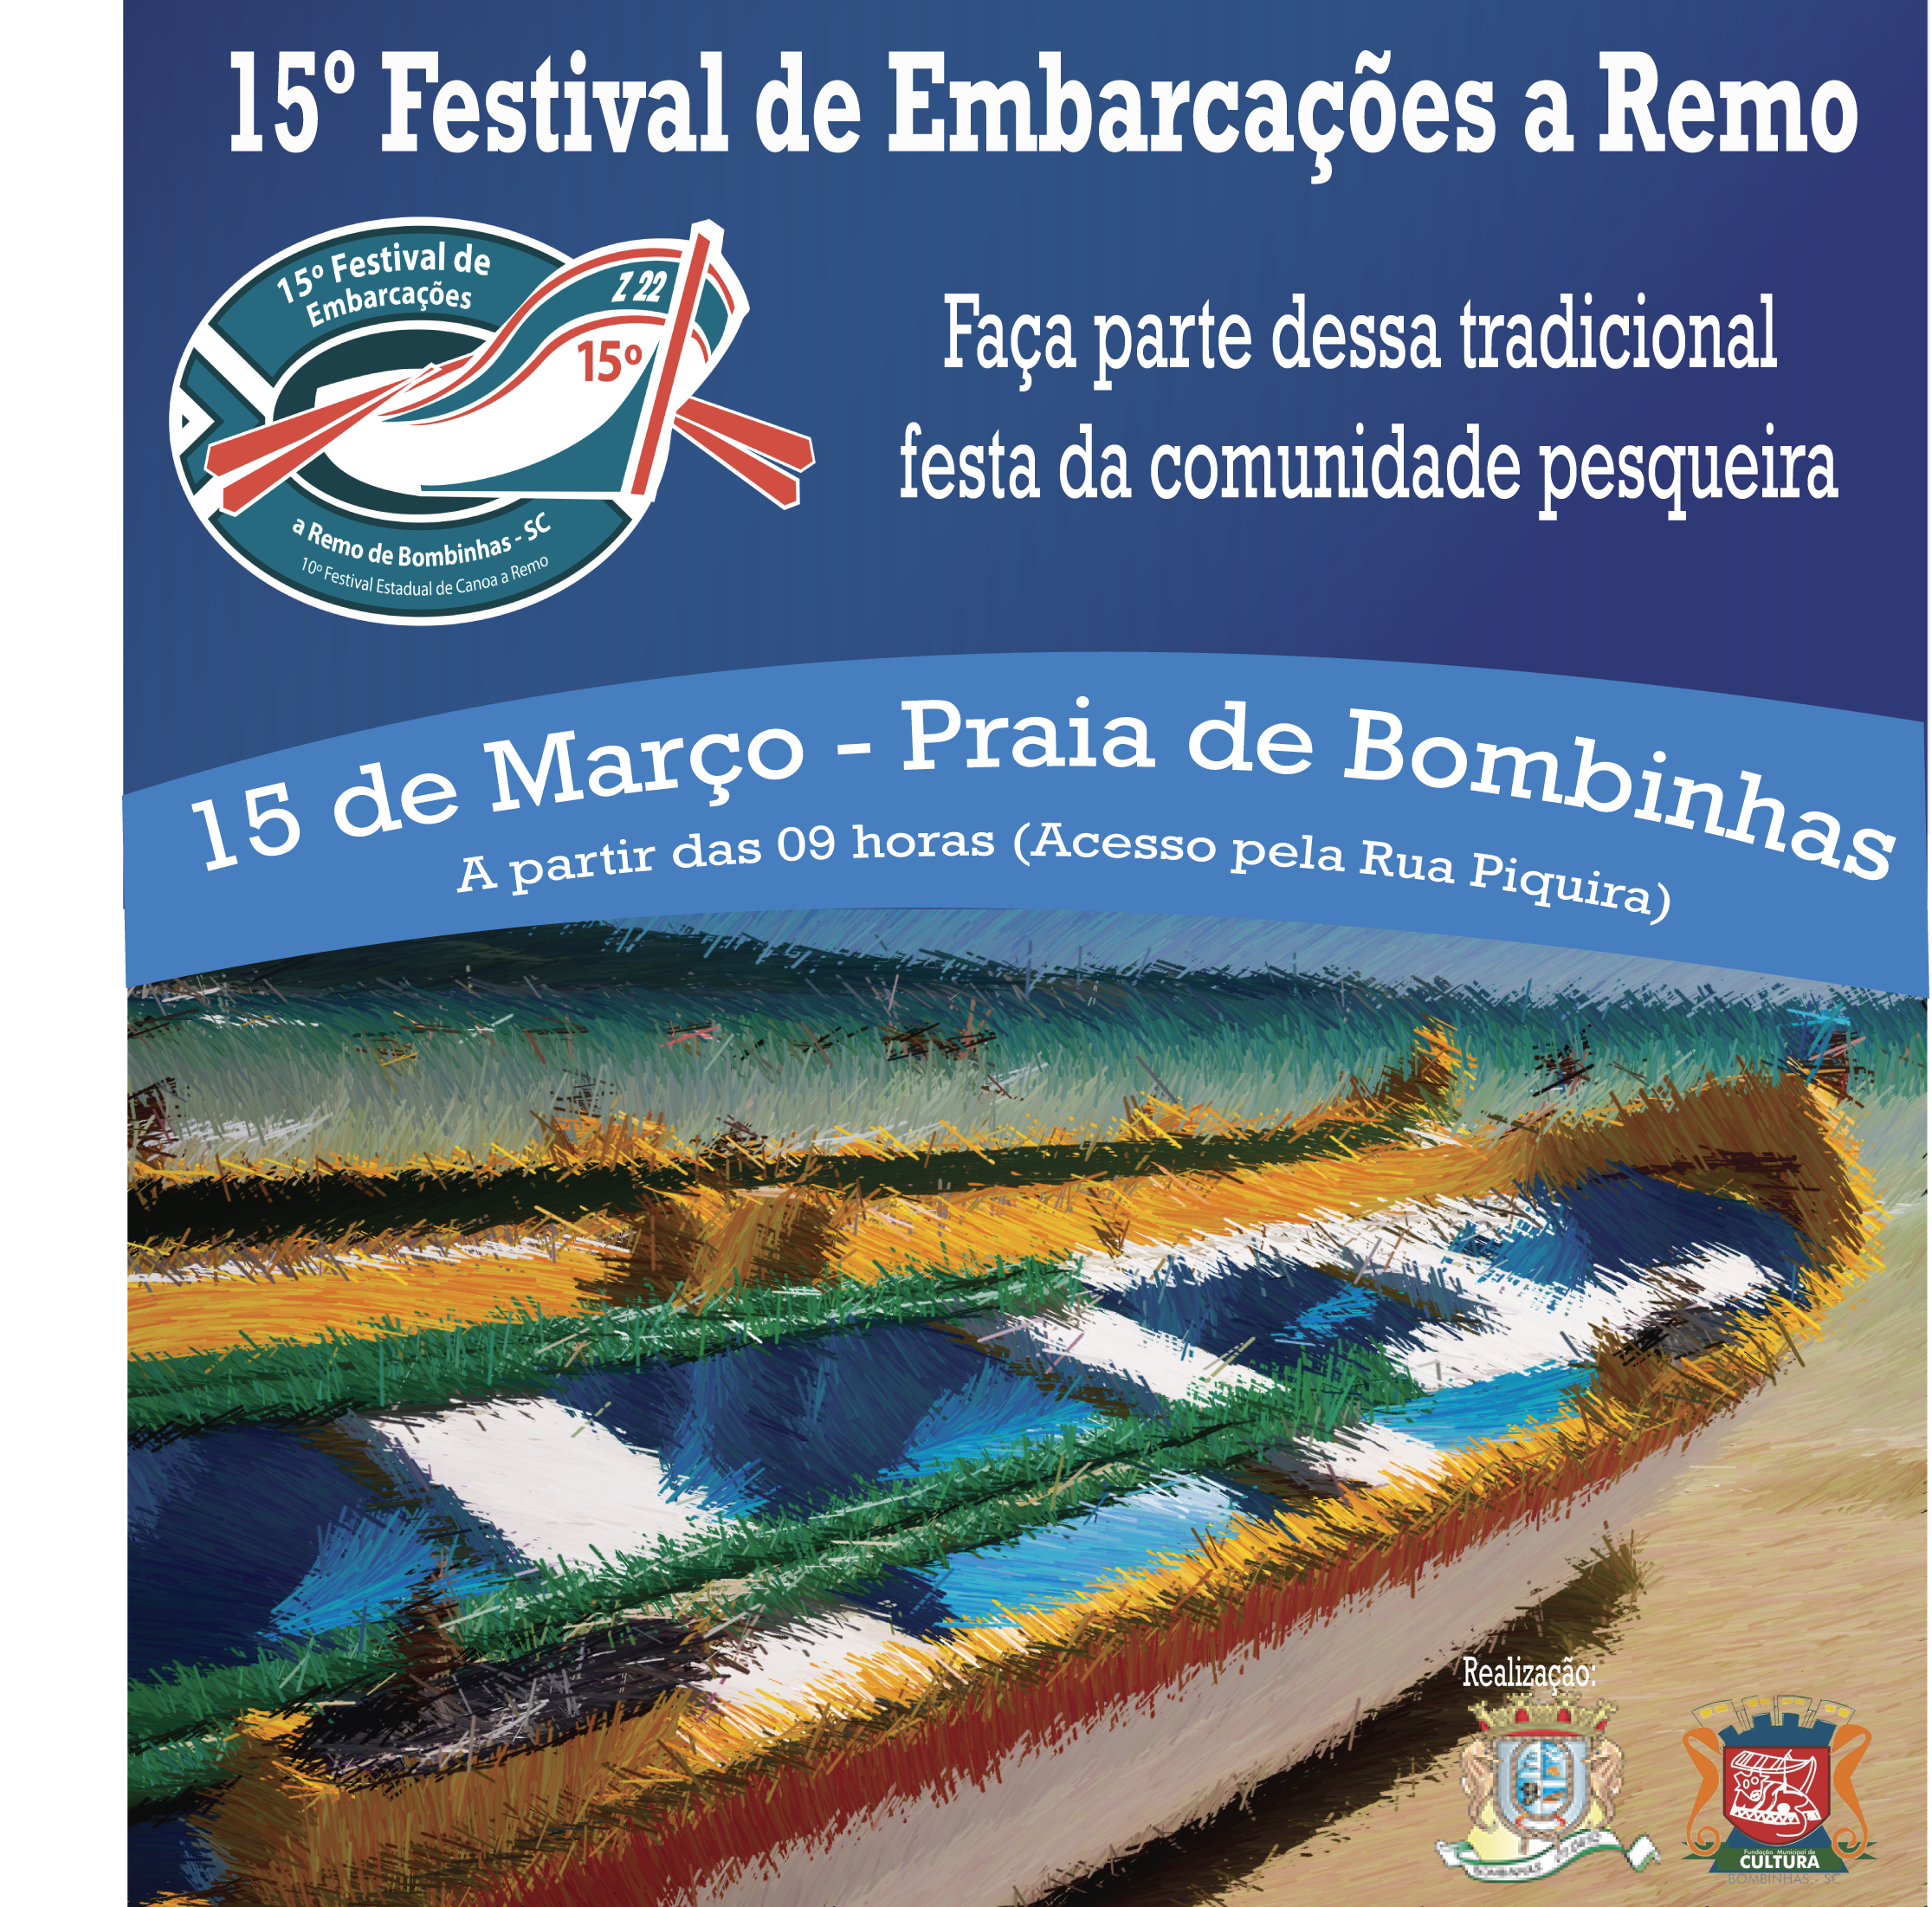 15º Festival de Embarcação a Remo